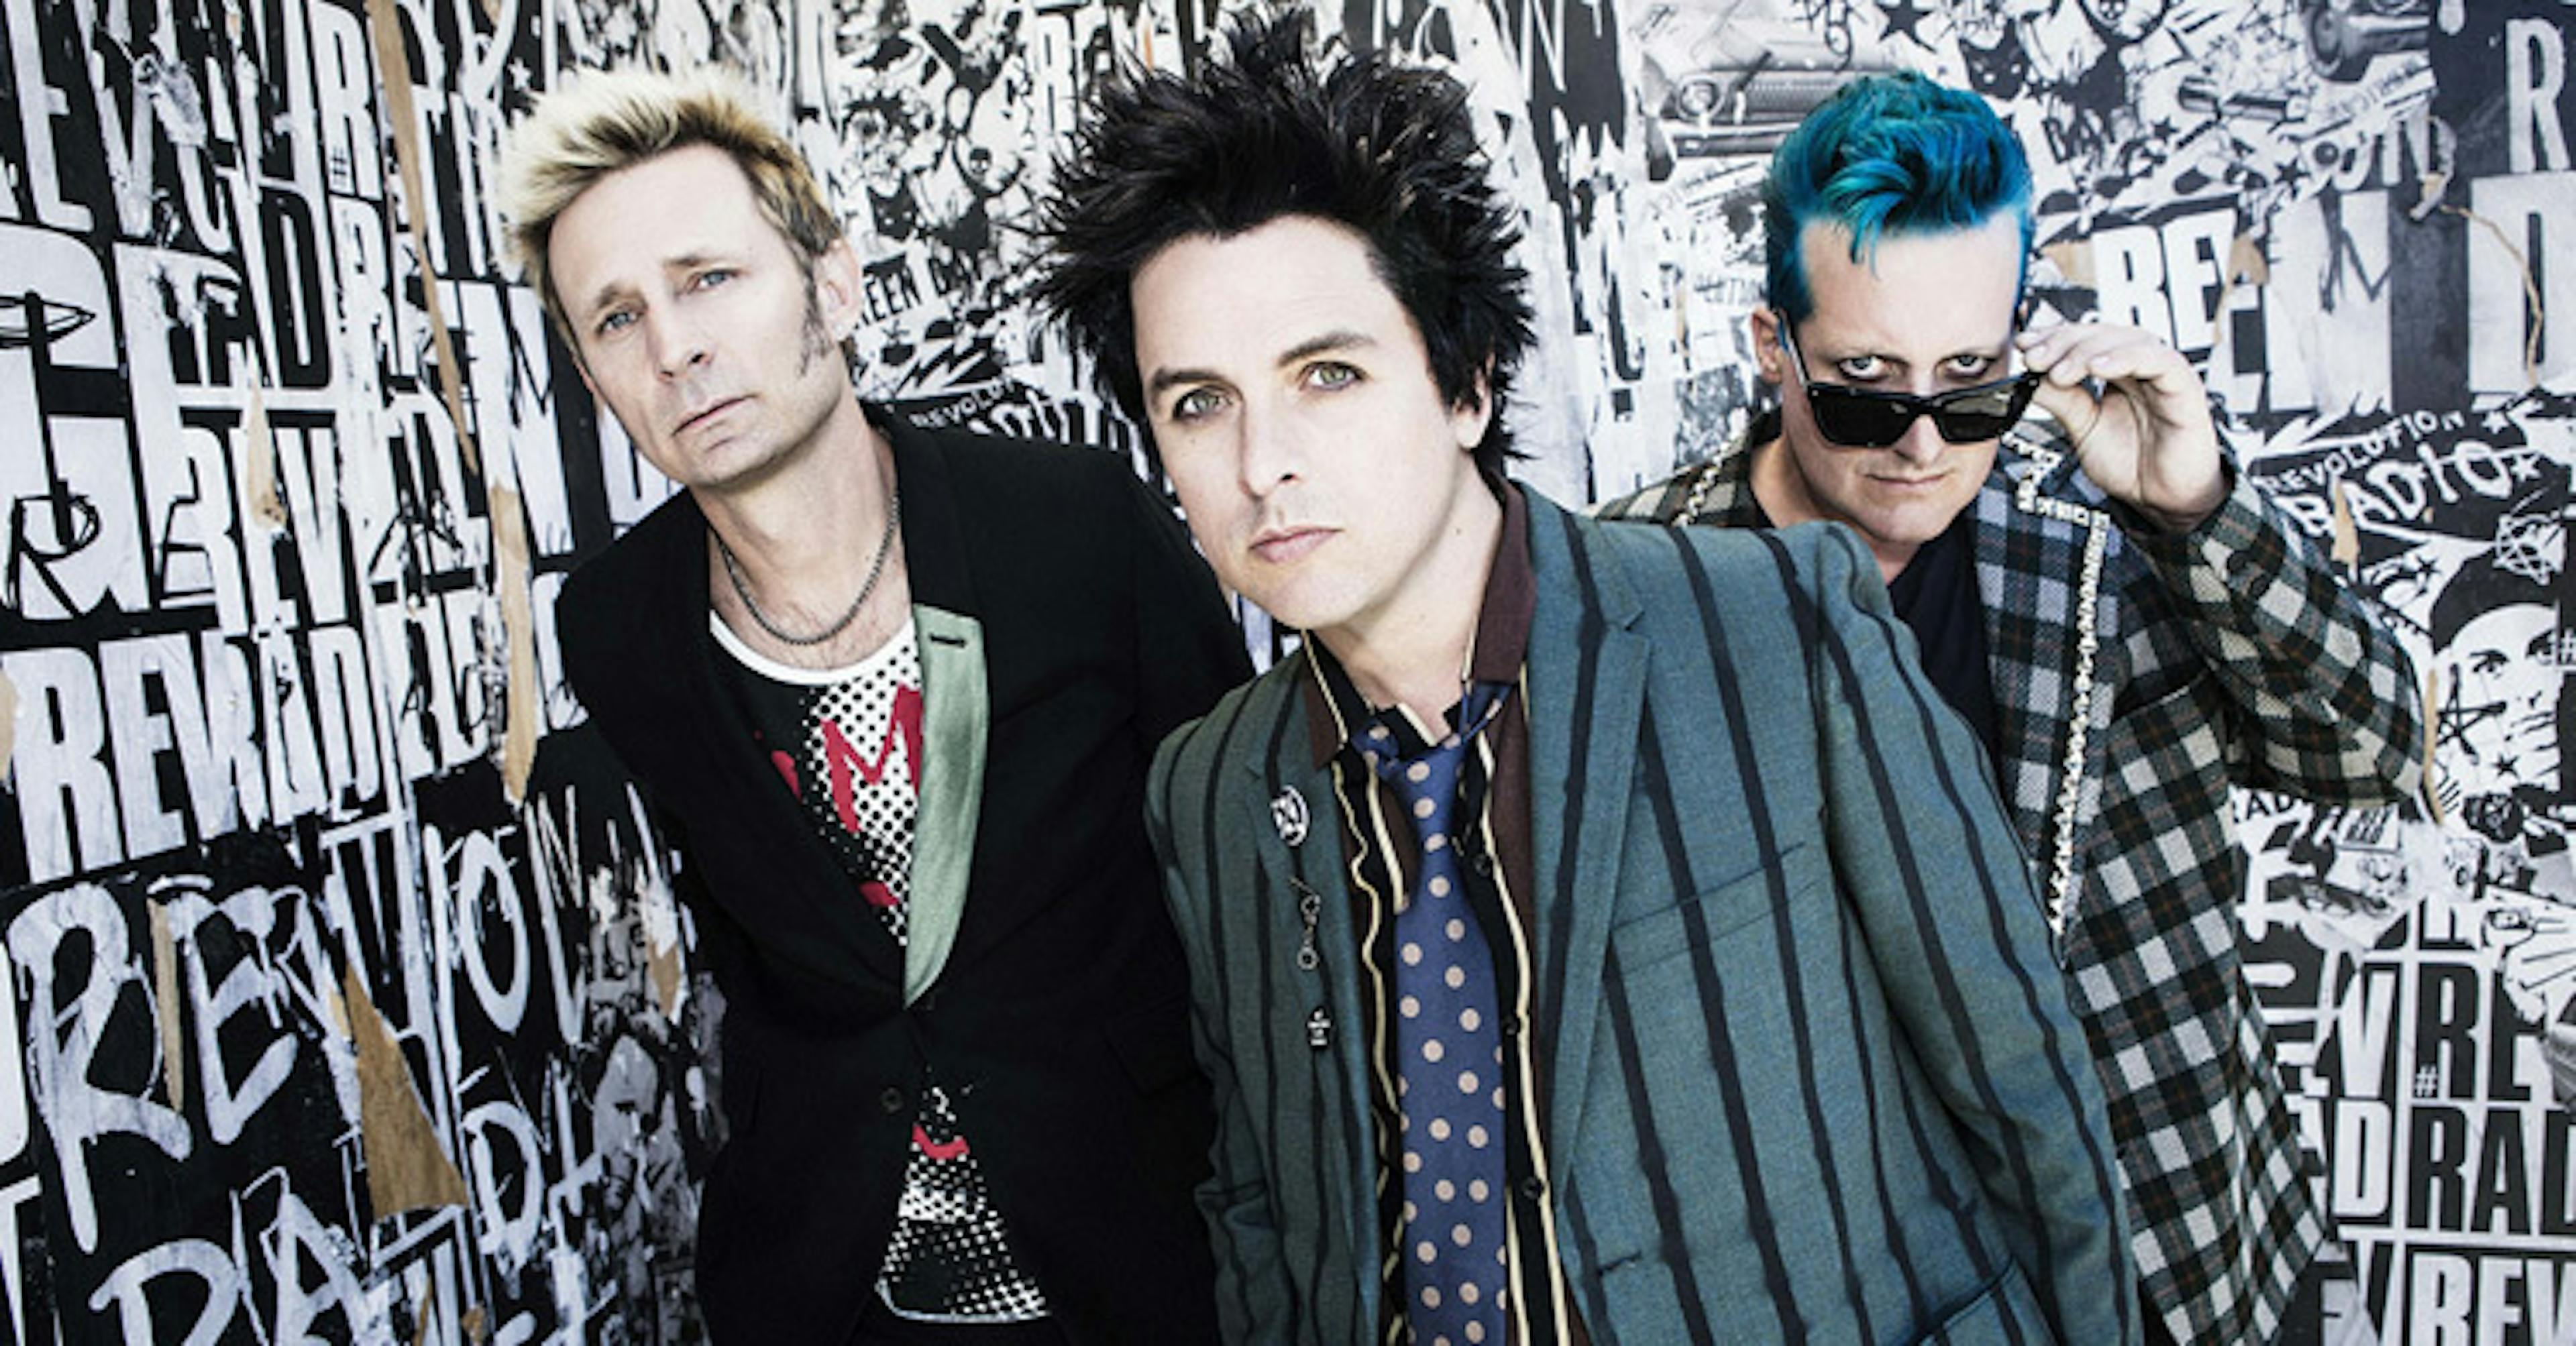 Watch Green Day Perform Bang Bang At The American Music Awards